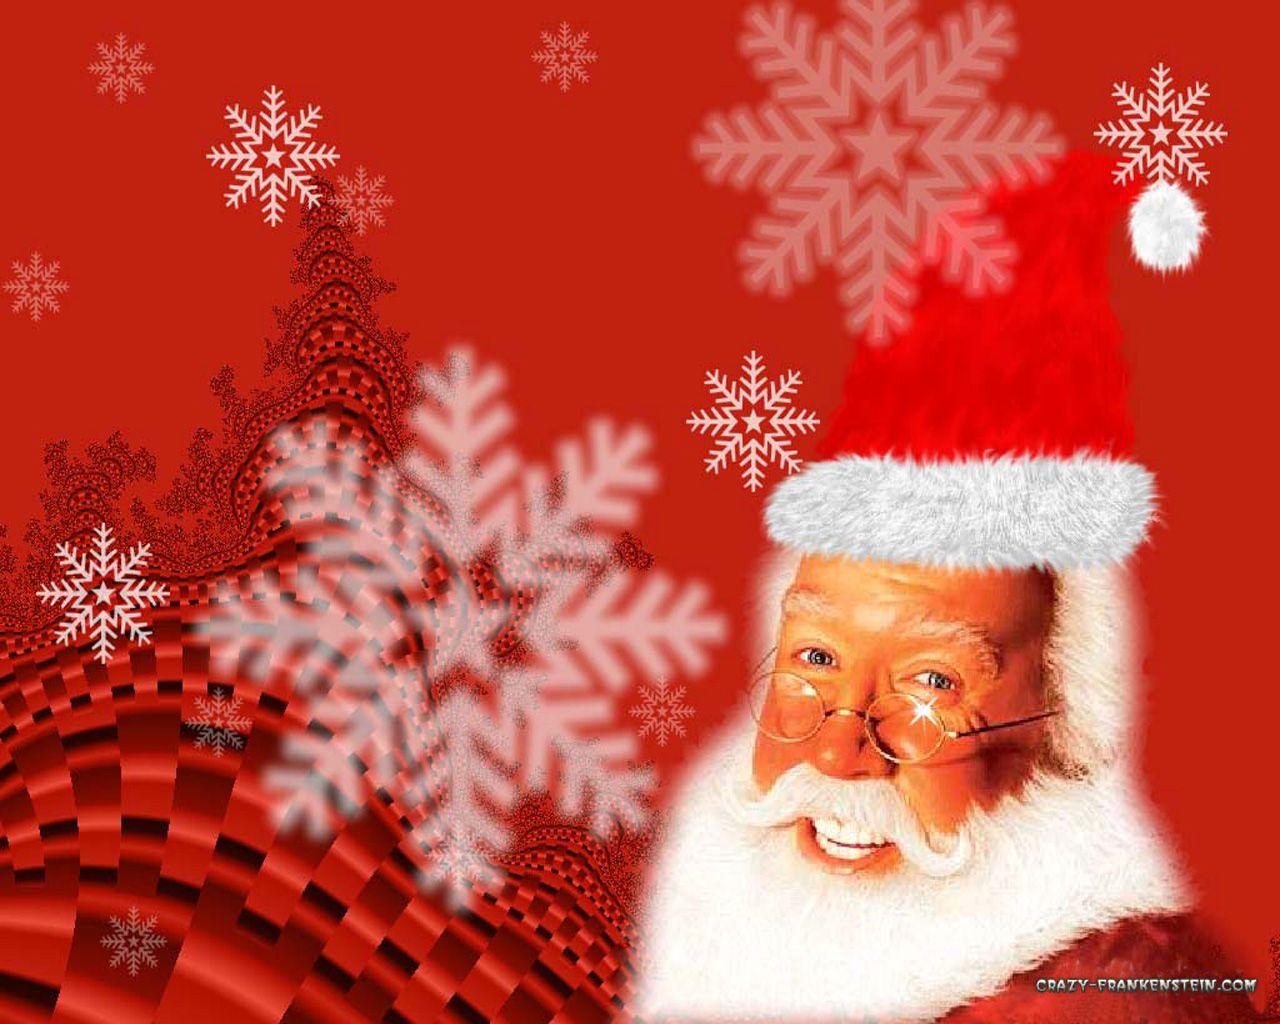 The Santa Clause 2 Wallpaper. Santa